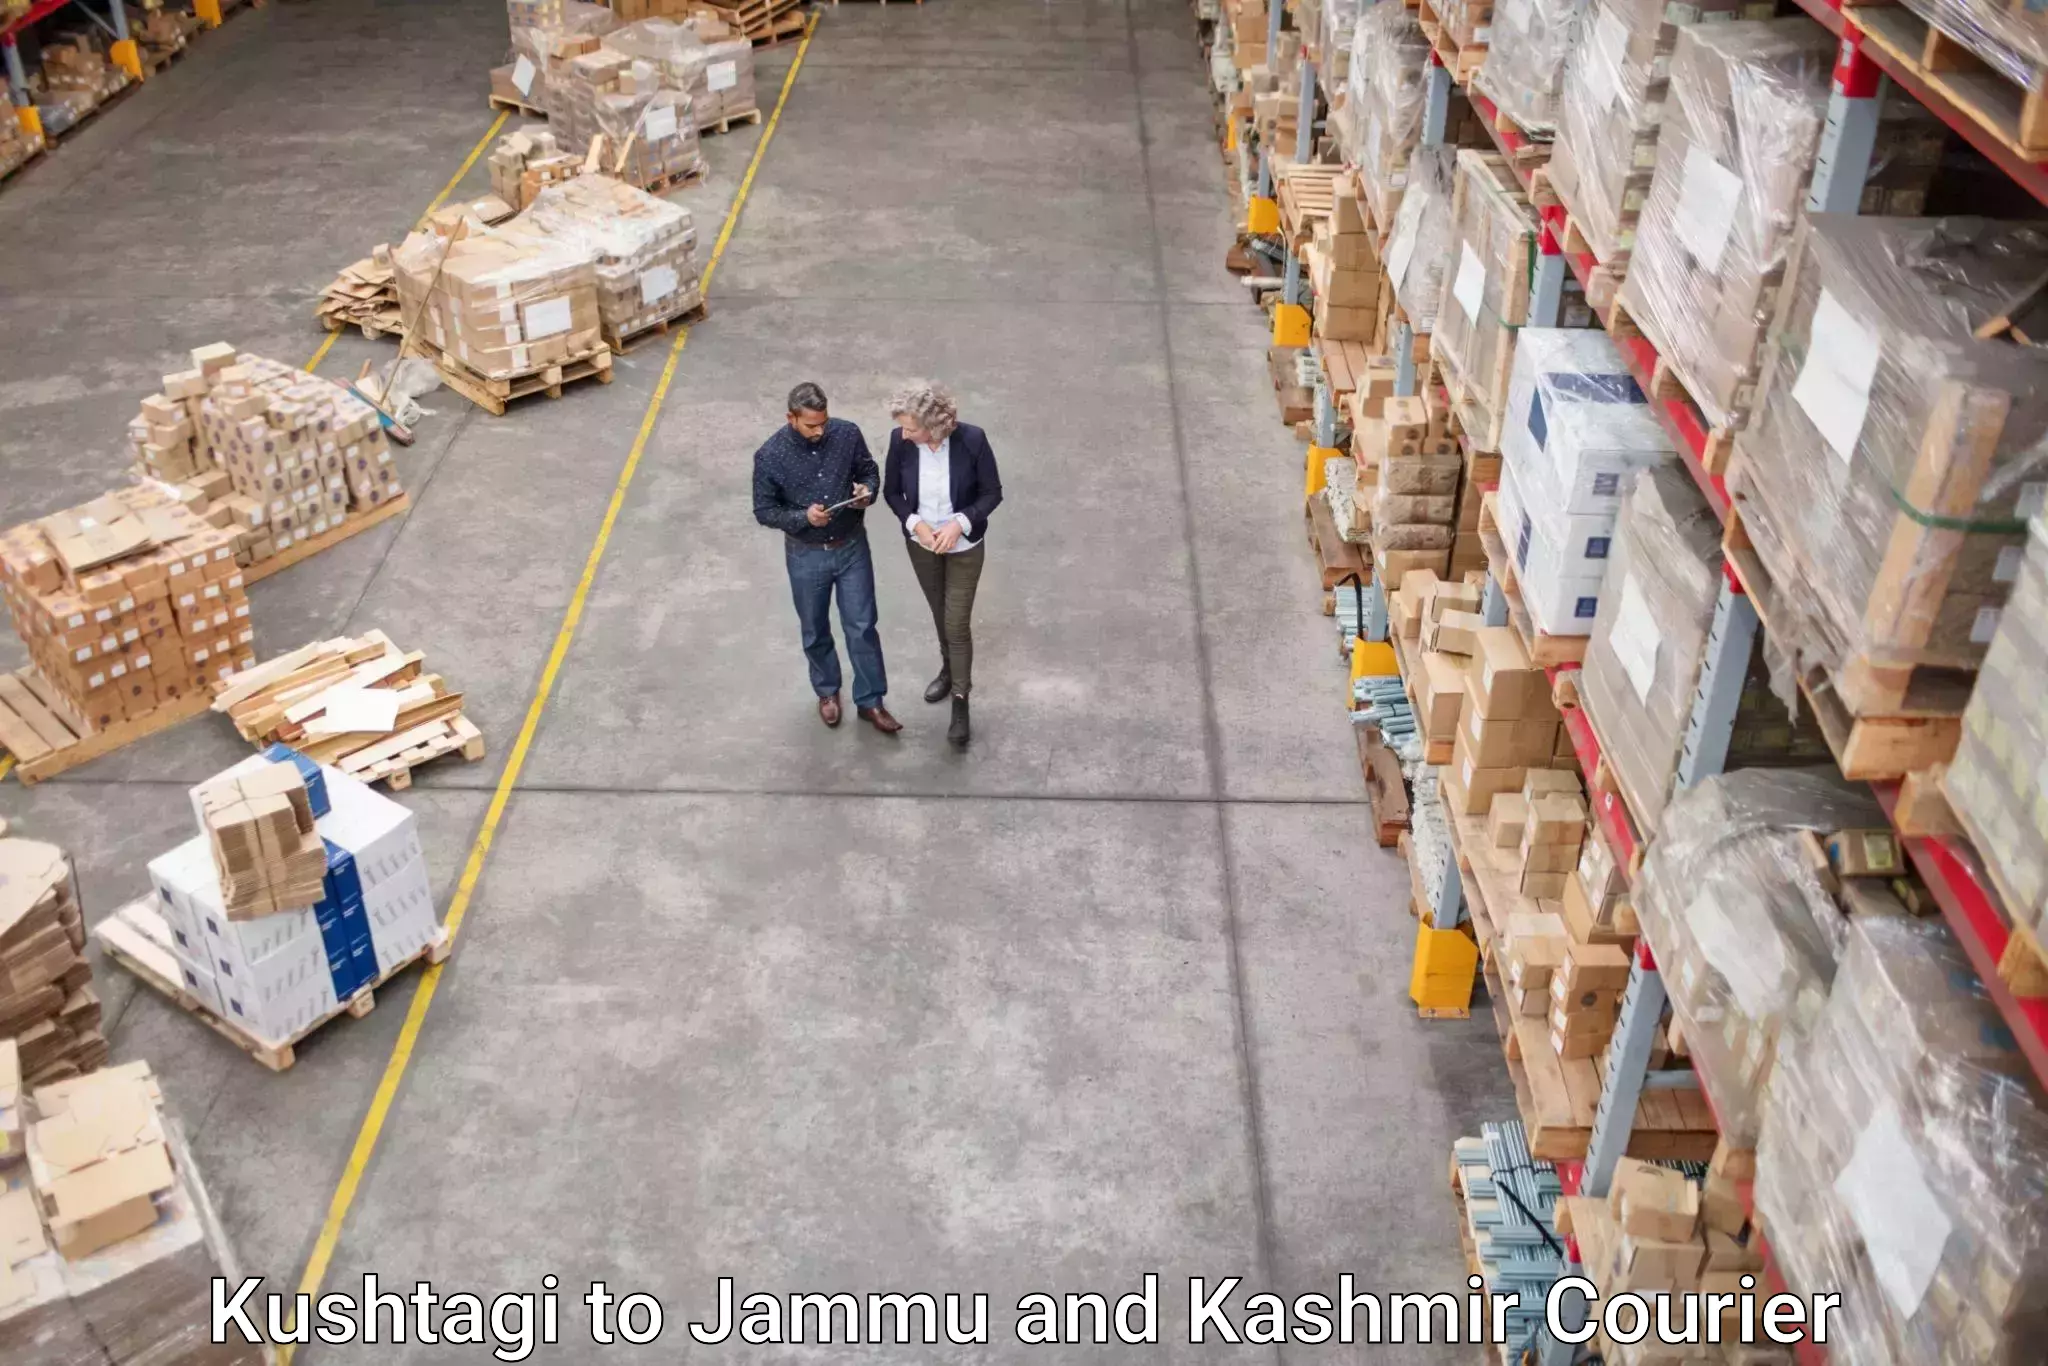 Efficient cargo services Kushtagi to University of Jammu